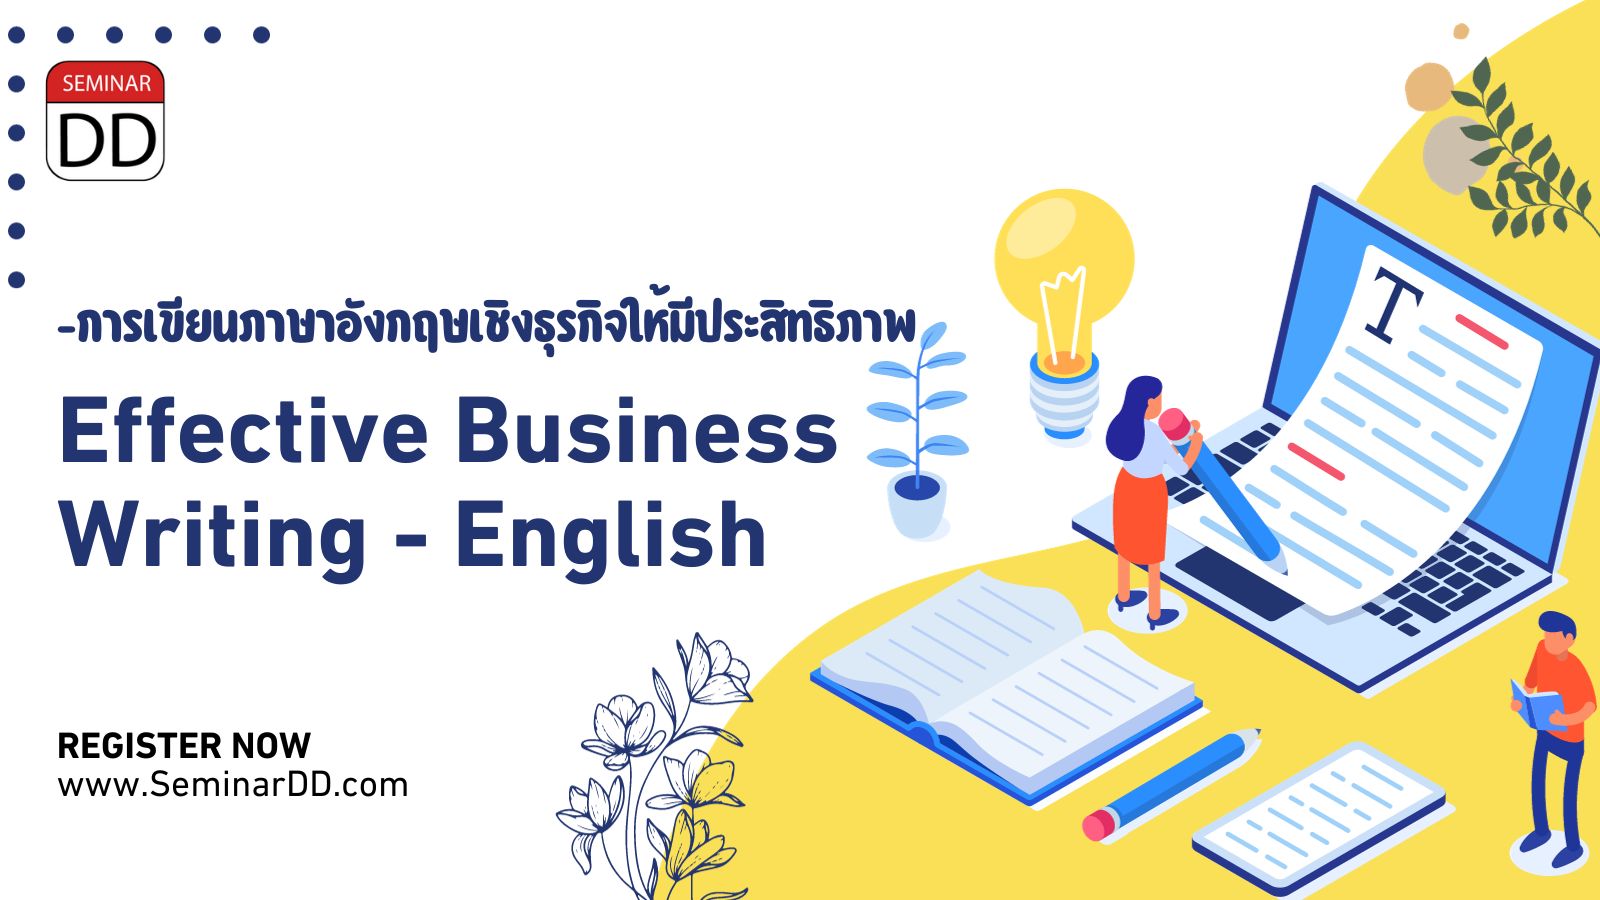 หลักสูตร การเขียนภาษาอังกฤษเชิงธุรกิจให้มีประสิทธิภาพ (Effective Business Writing-ENGLISH)